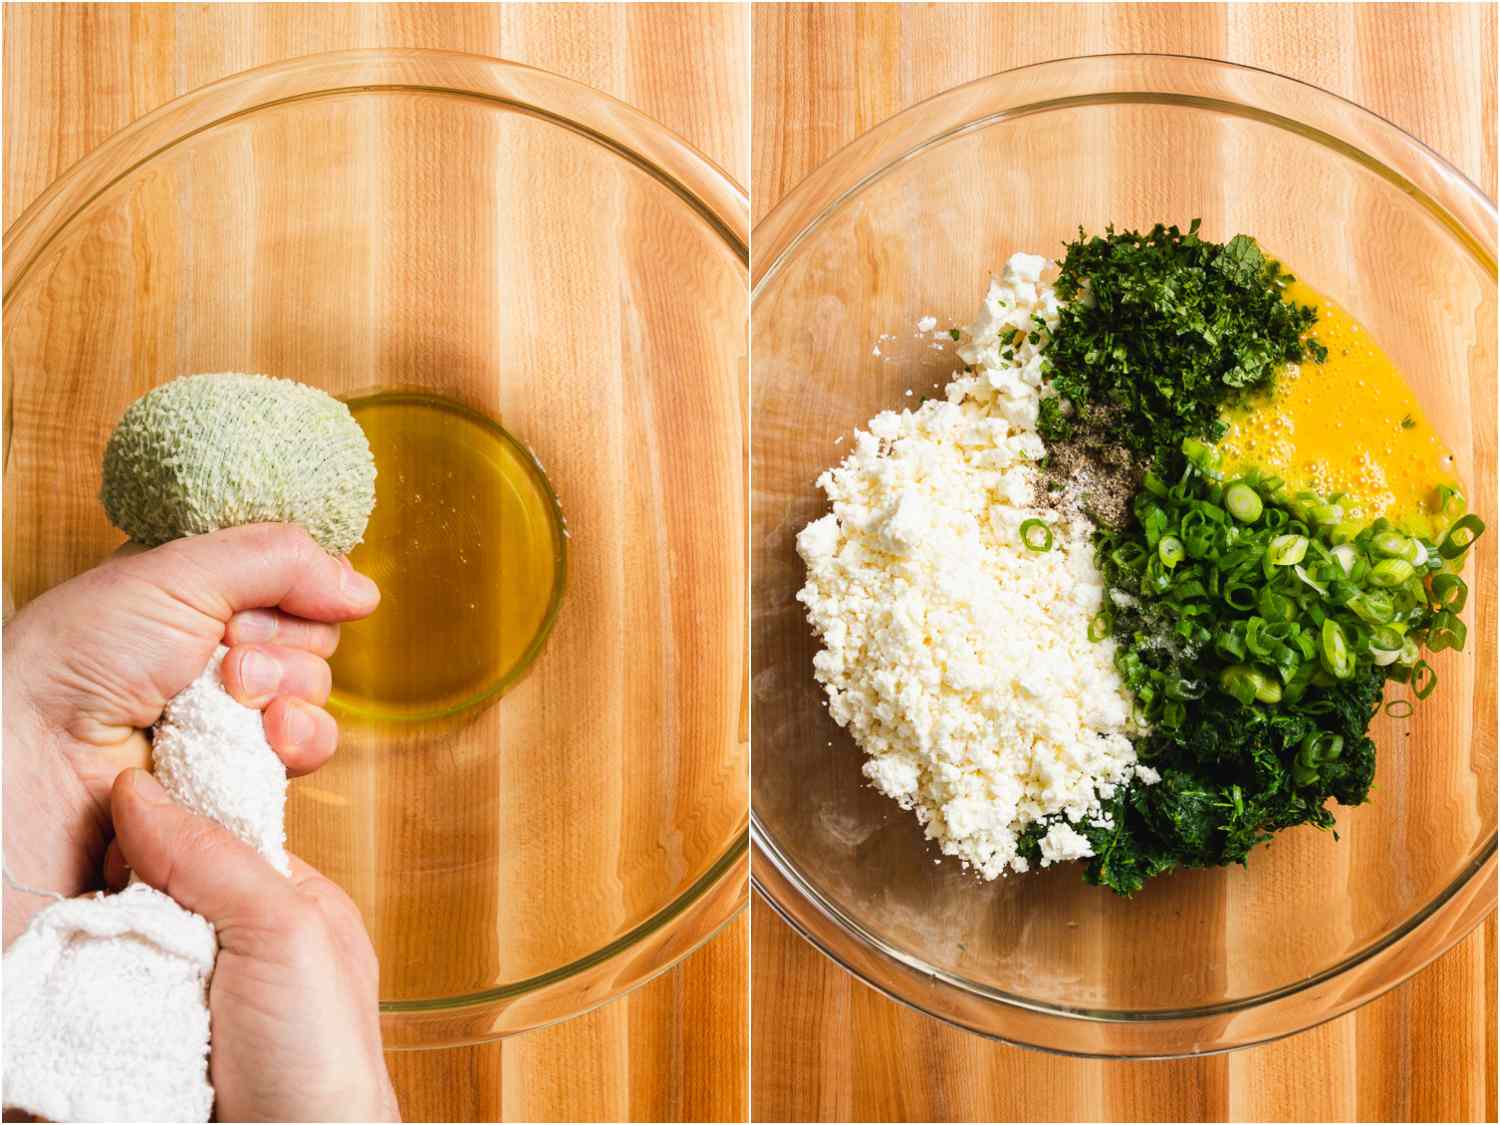 拼贴:用毛巾从煮熟的菠菜中挤出水分;另一个碗里装满了奶酪、鸡蛋、葱花和切碎的菠菜gydF4y2Ba